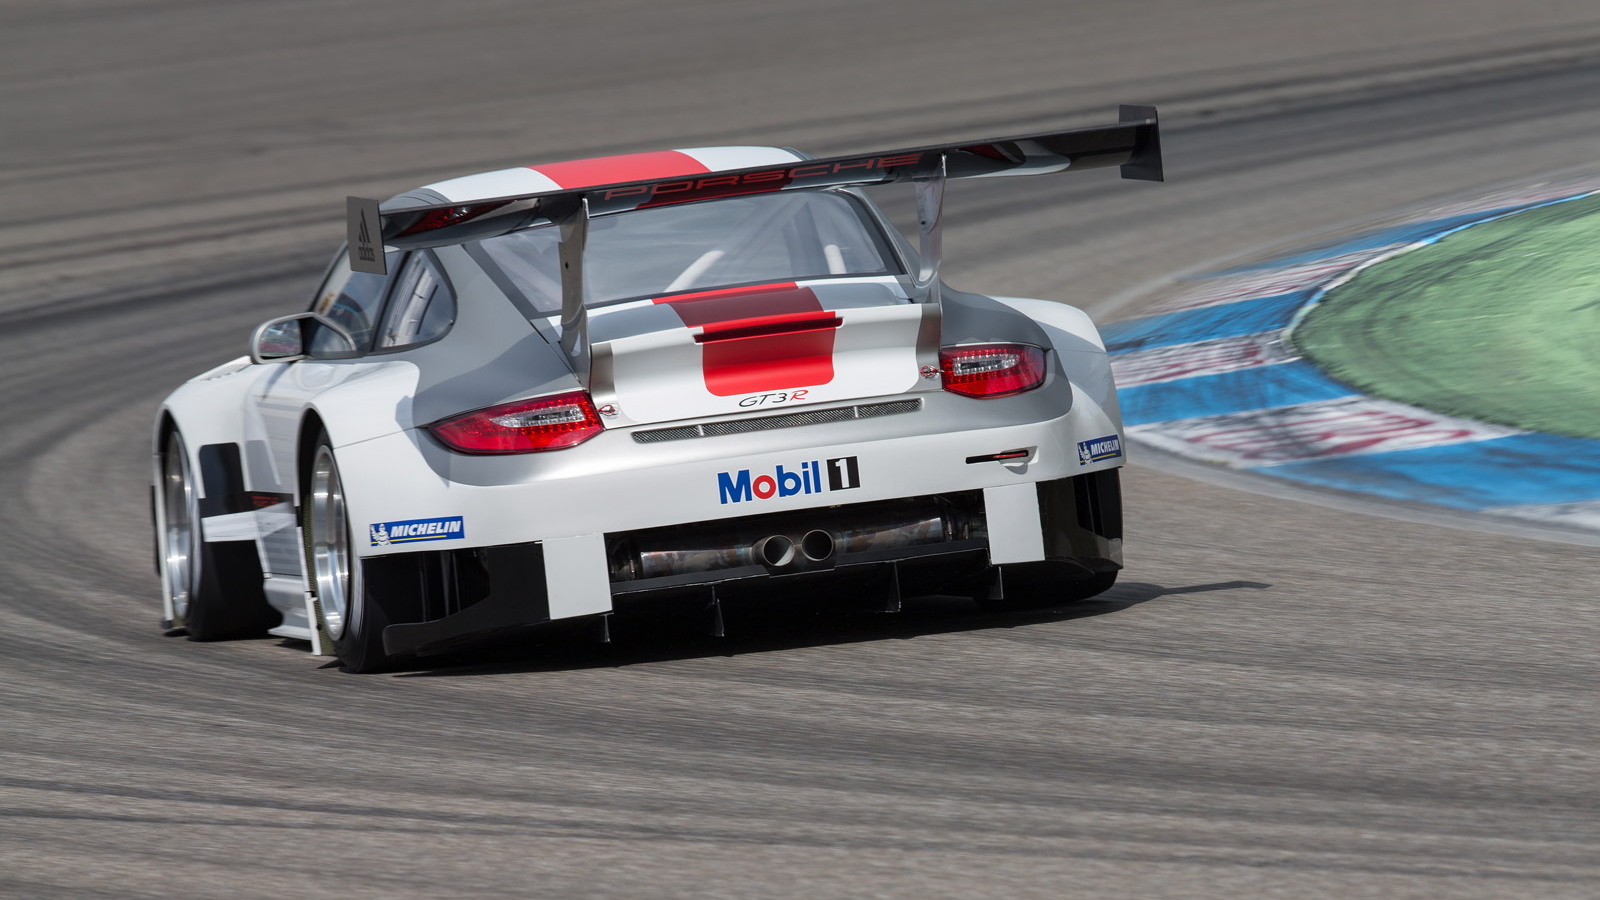 2013 Porsche 911 GT3 R race car